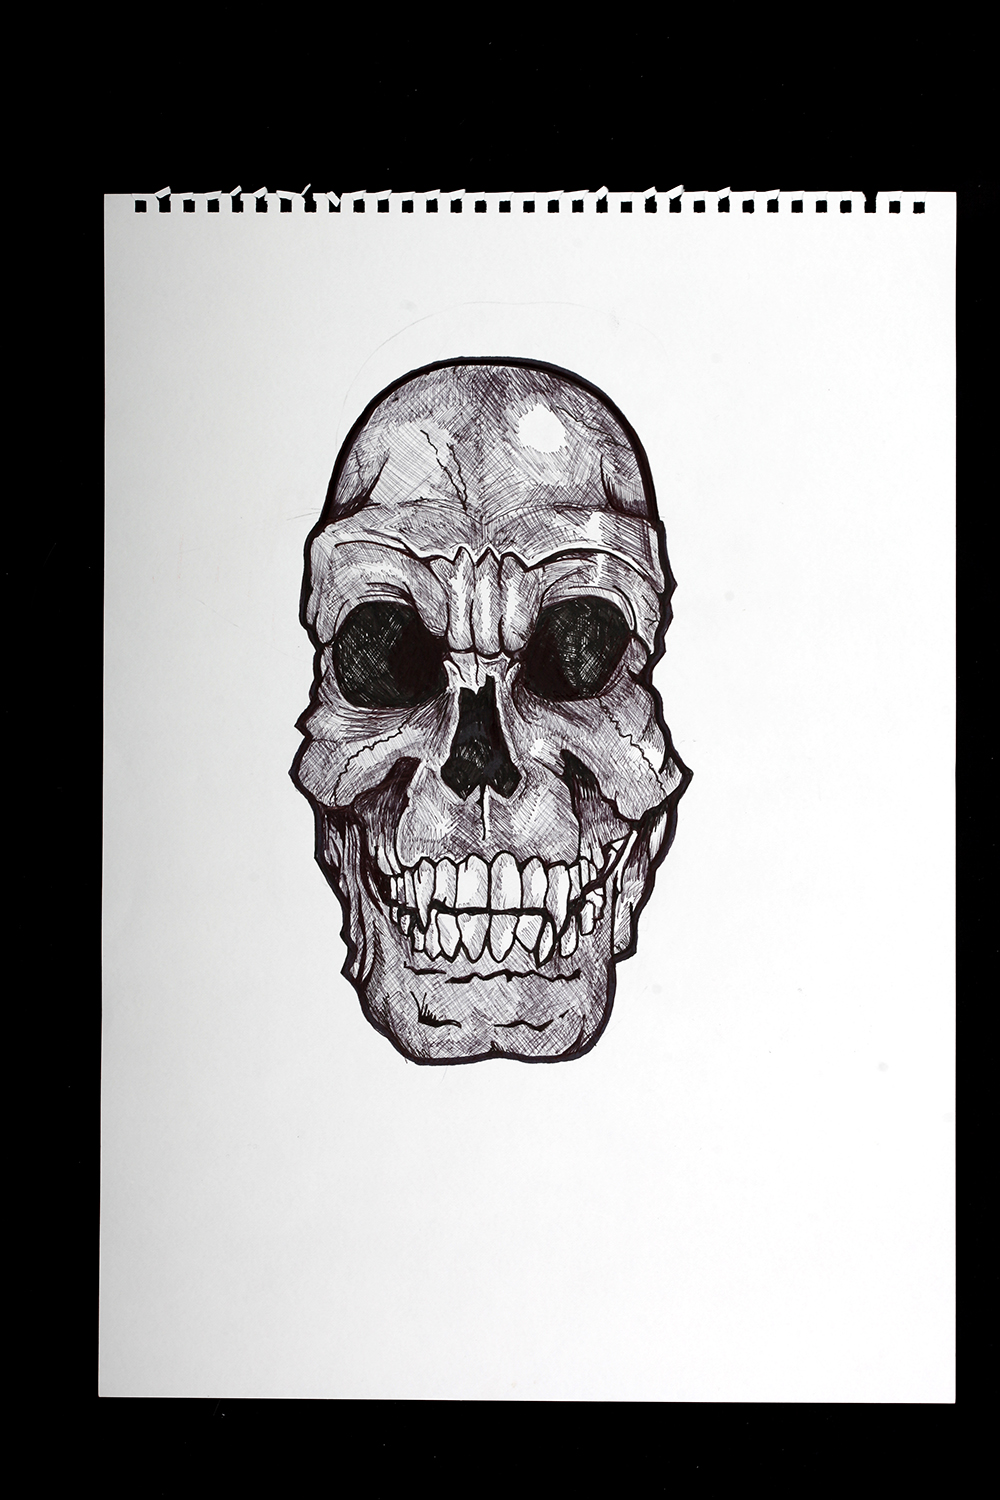 Skull in ink